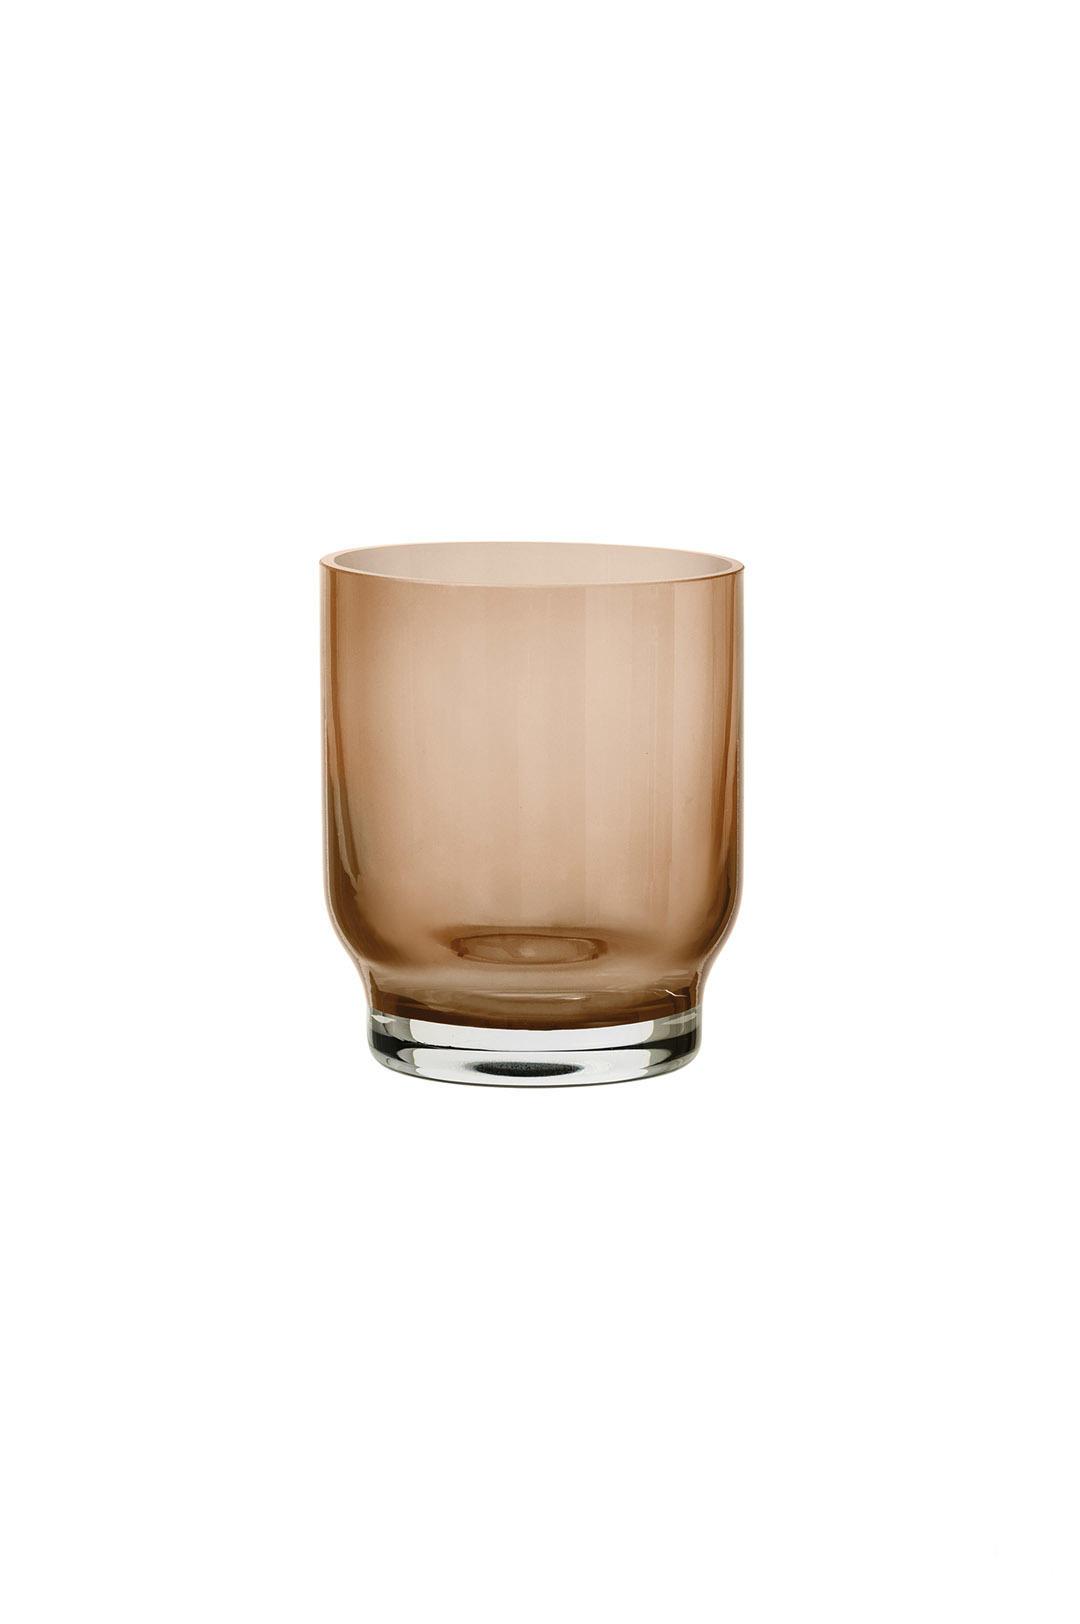 Комплект стаканов Lungo из цветного стекла от Blomus — Фотография 1